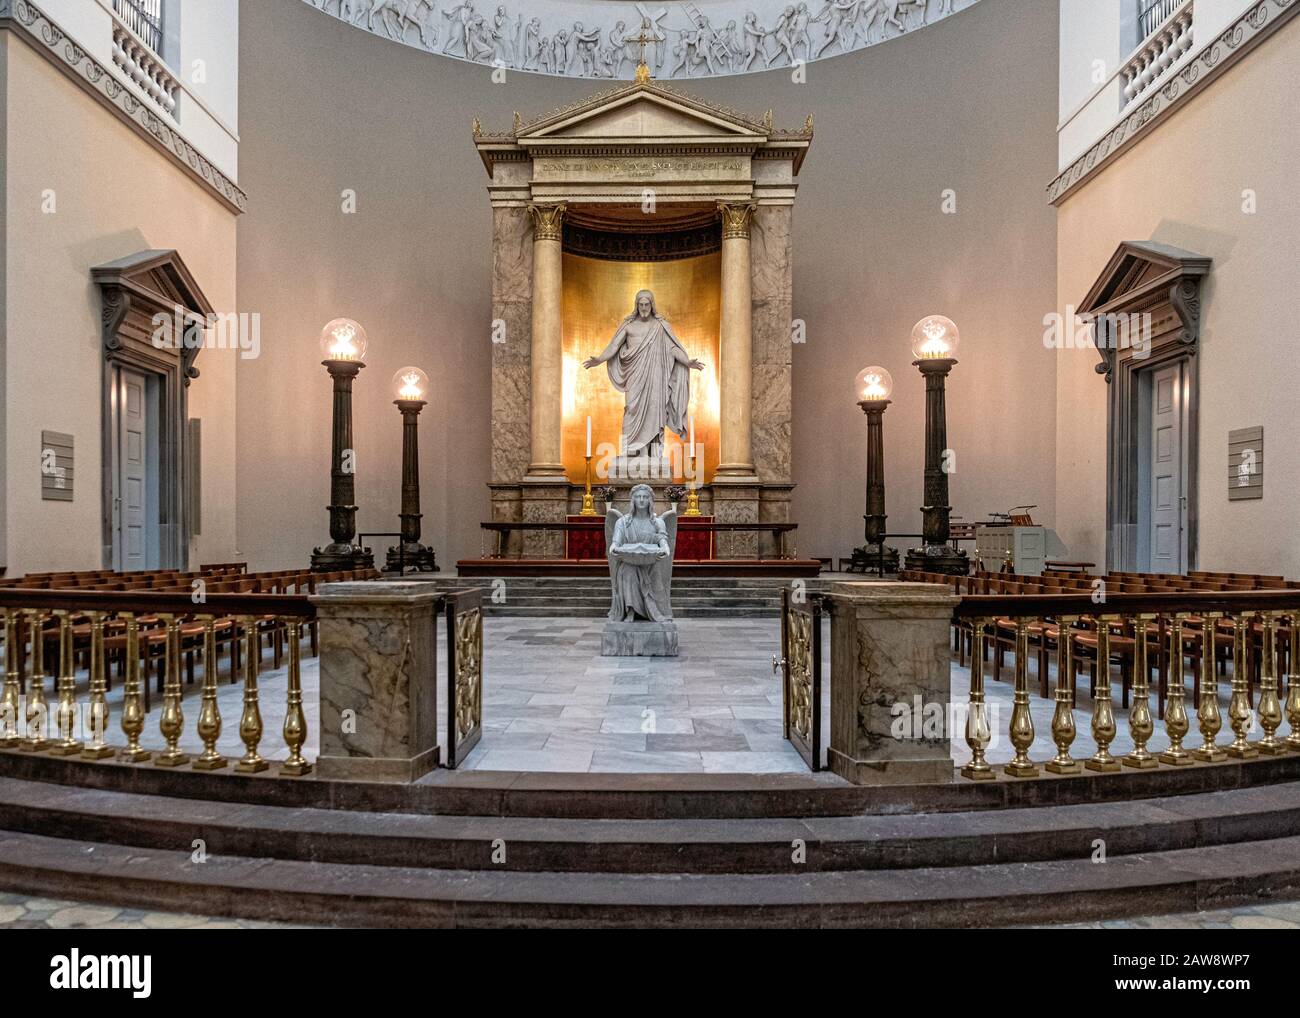 Kopenhagen, Dänemark. Muttergotteskirche vor Frue Kirke Interior. Altarbild, Christuskulptur, Taufstein, neoklassizistischer Stil Stockfoto